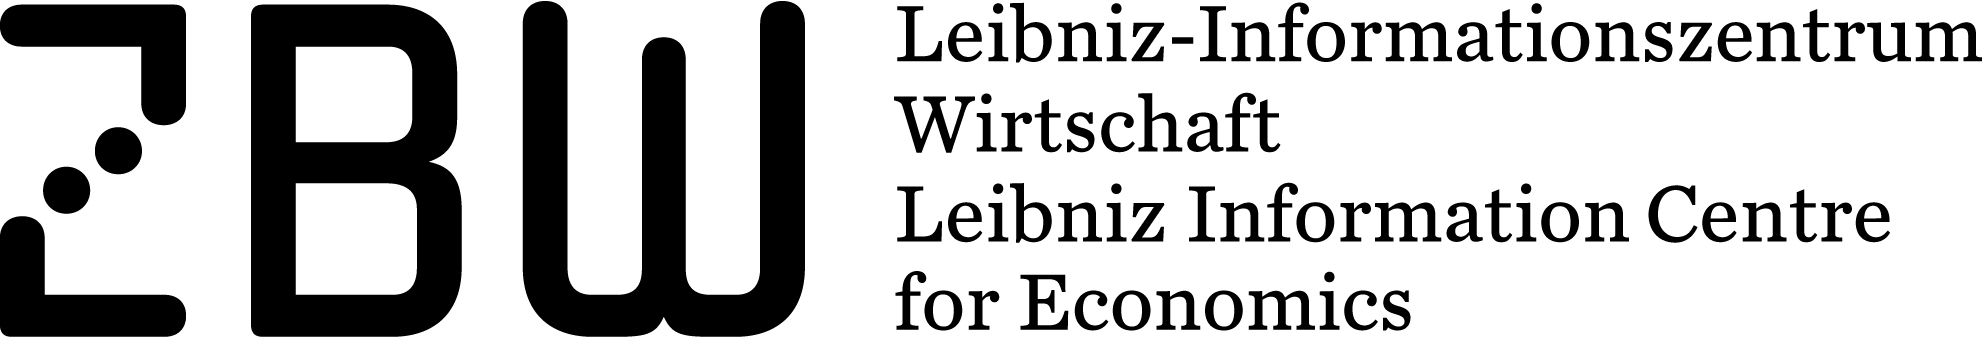 Deutsche Zentralbibliothek für Wirtschaftswissenschaften (ZBW) -Leibniz-Informationszentrum Wirtschaft